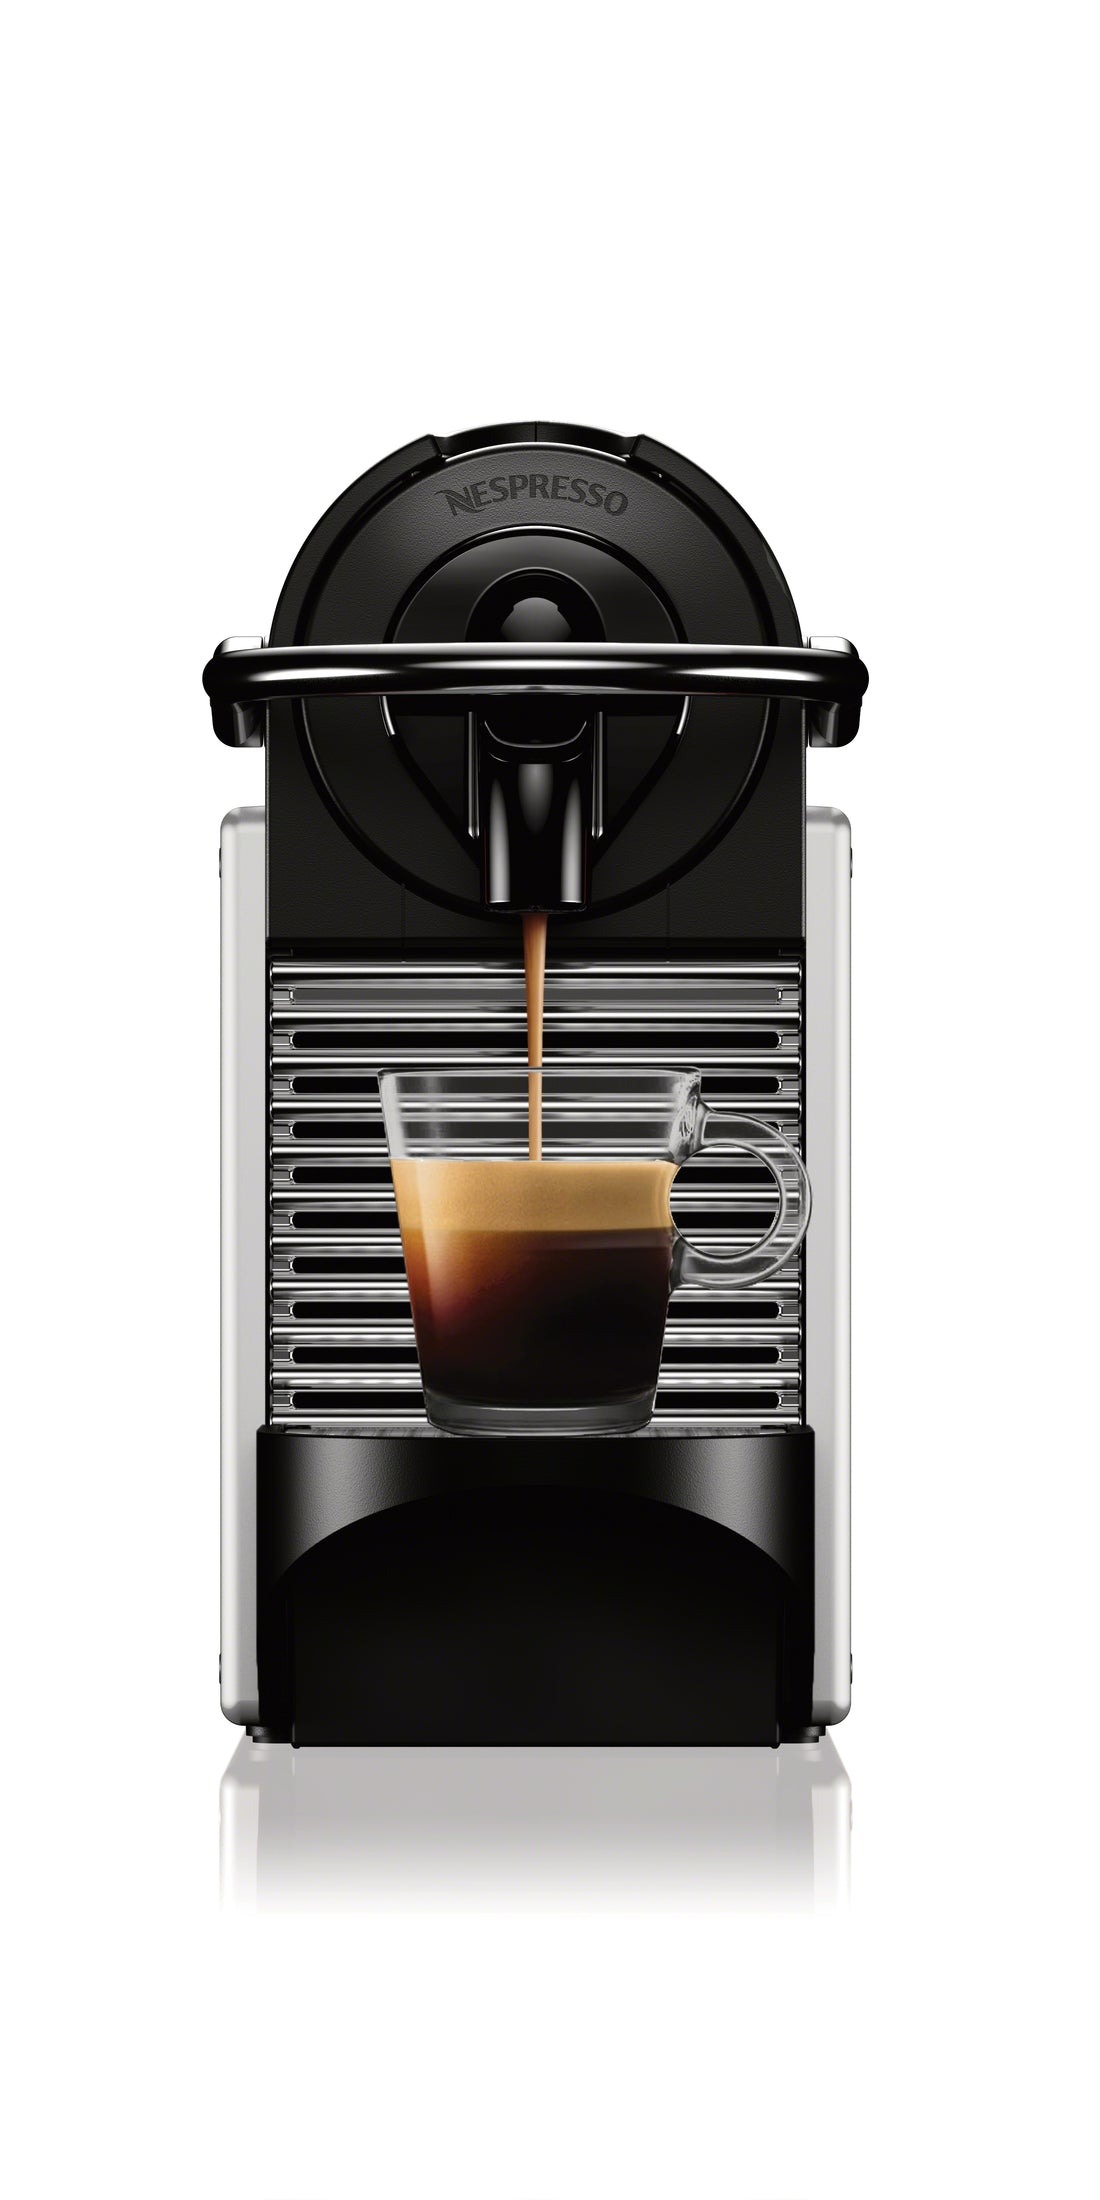 Nespresso Pixie Espresso Machine by DeLonghi - Aluminum